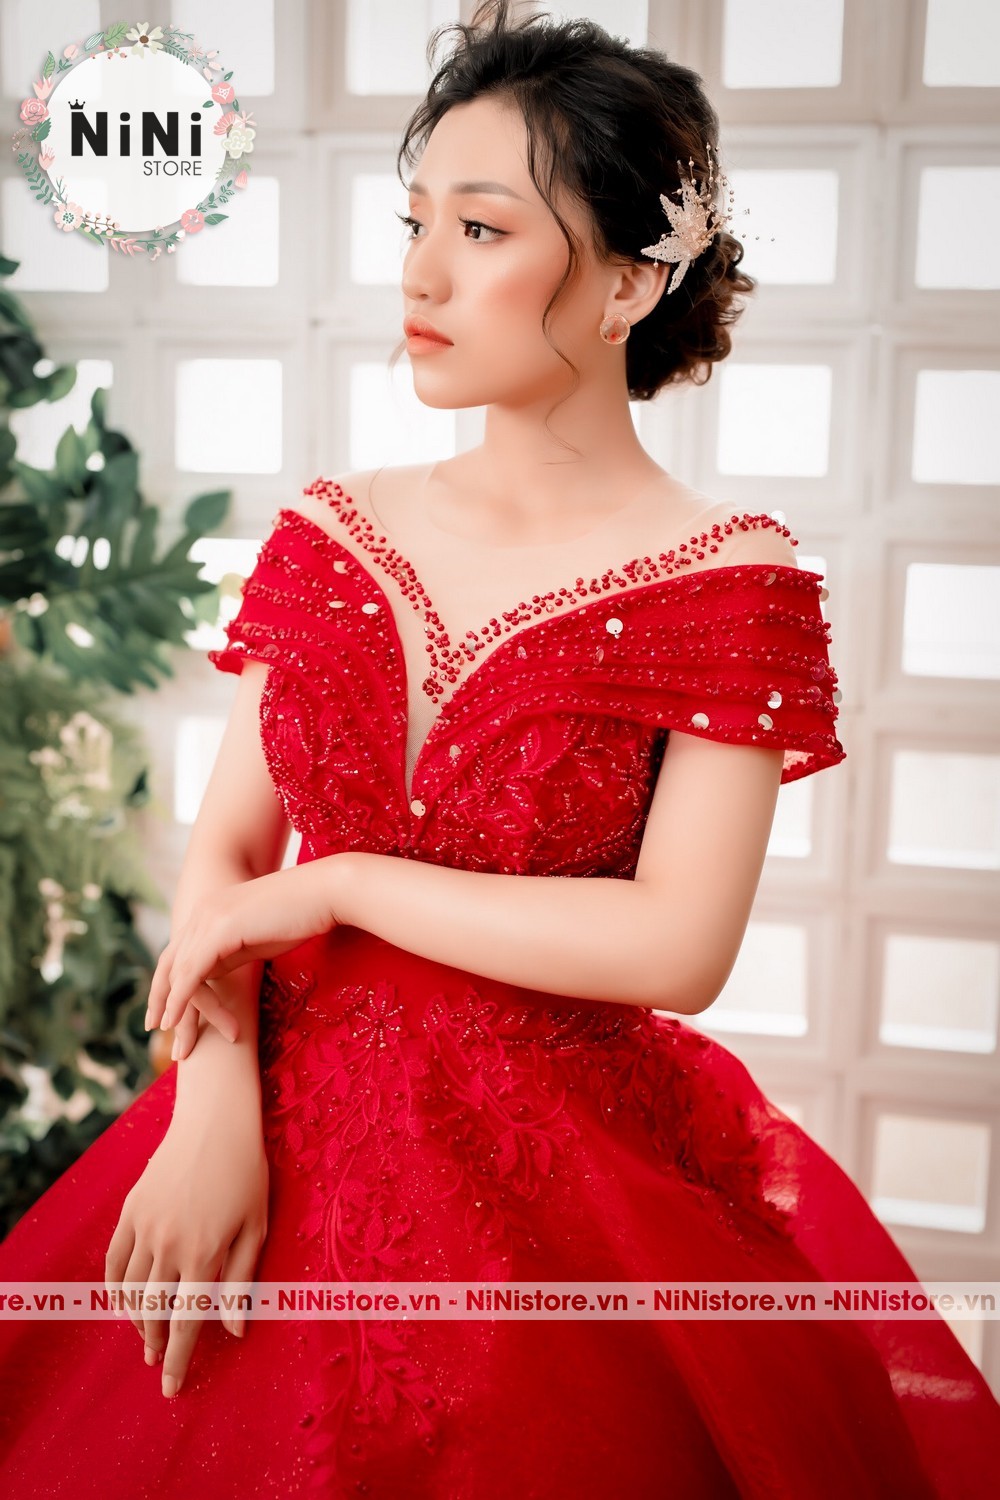 Top 10 mẫu váy cưới màu đỏ đẹp đơn giản ấn tượng nhất 2022